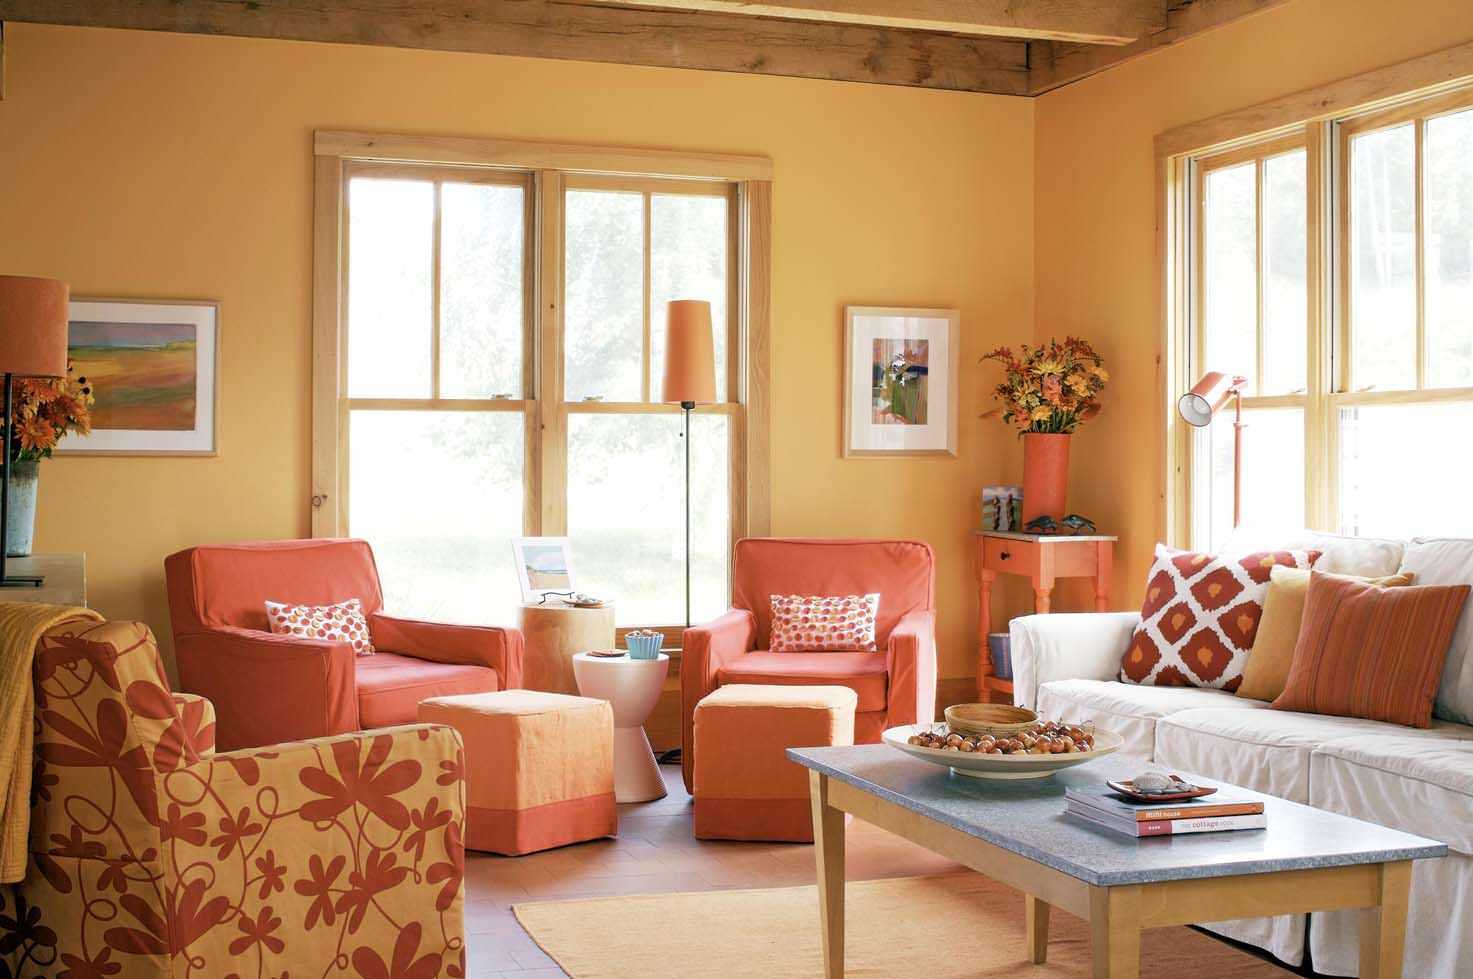 Сочетание сиреневого цвета с другими цветами в интерьере гостиной и спальни: комната в фиолетовых и лиловых тонах
 - 31 фото